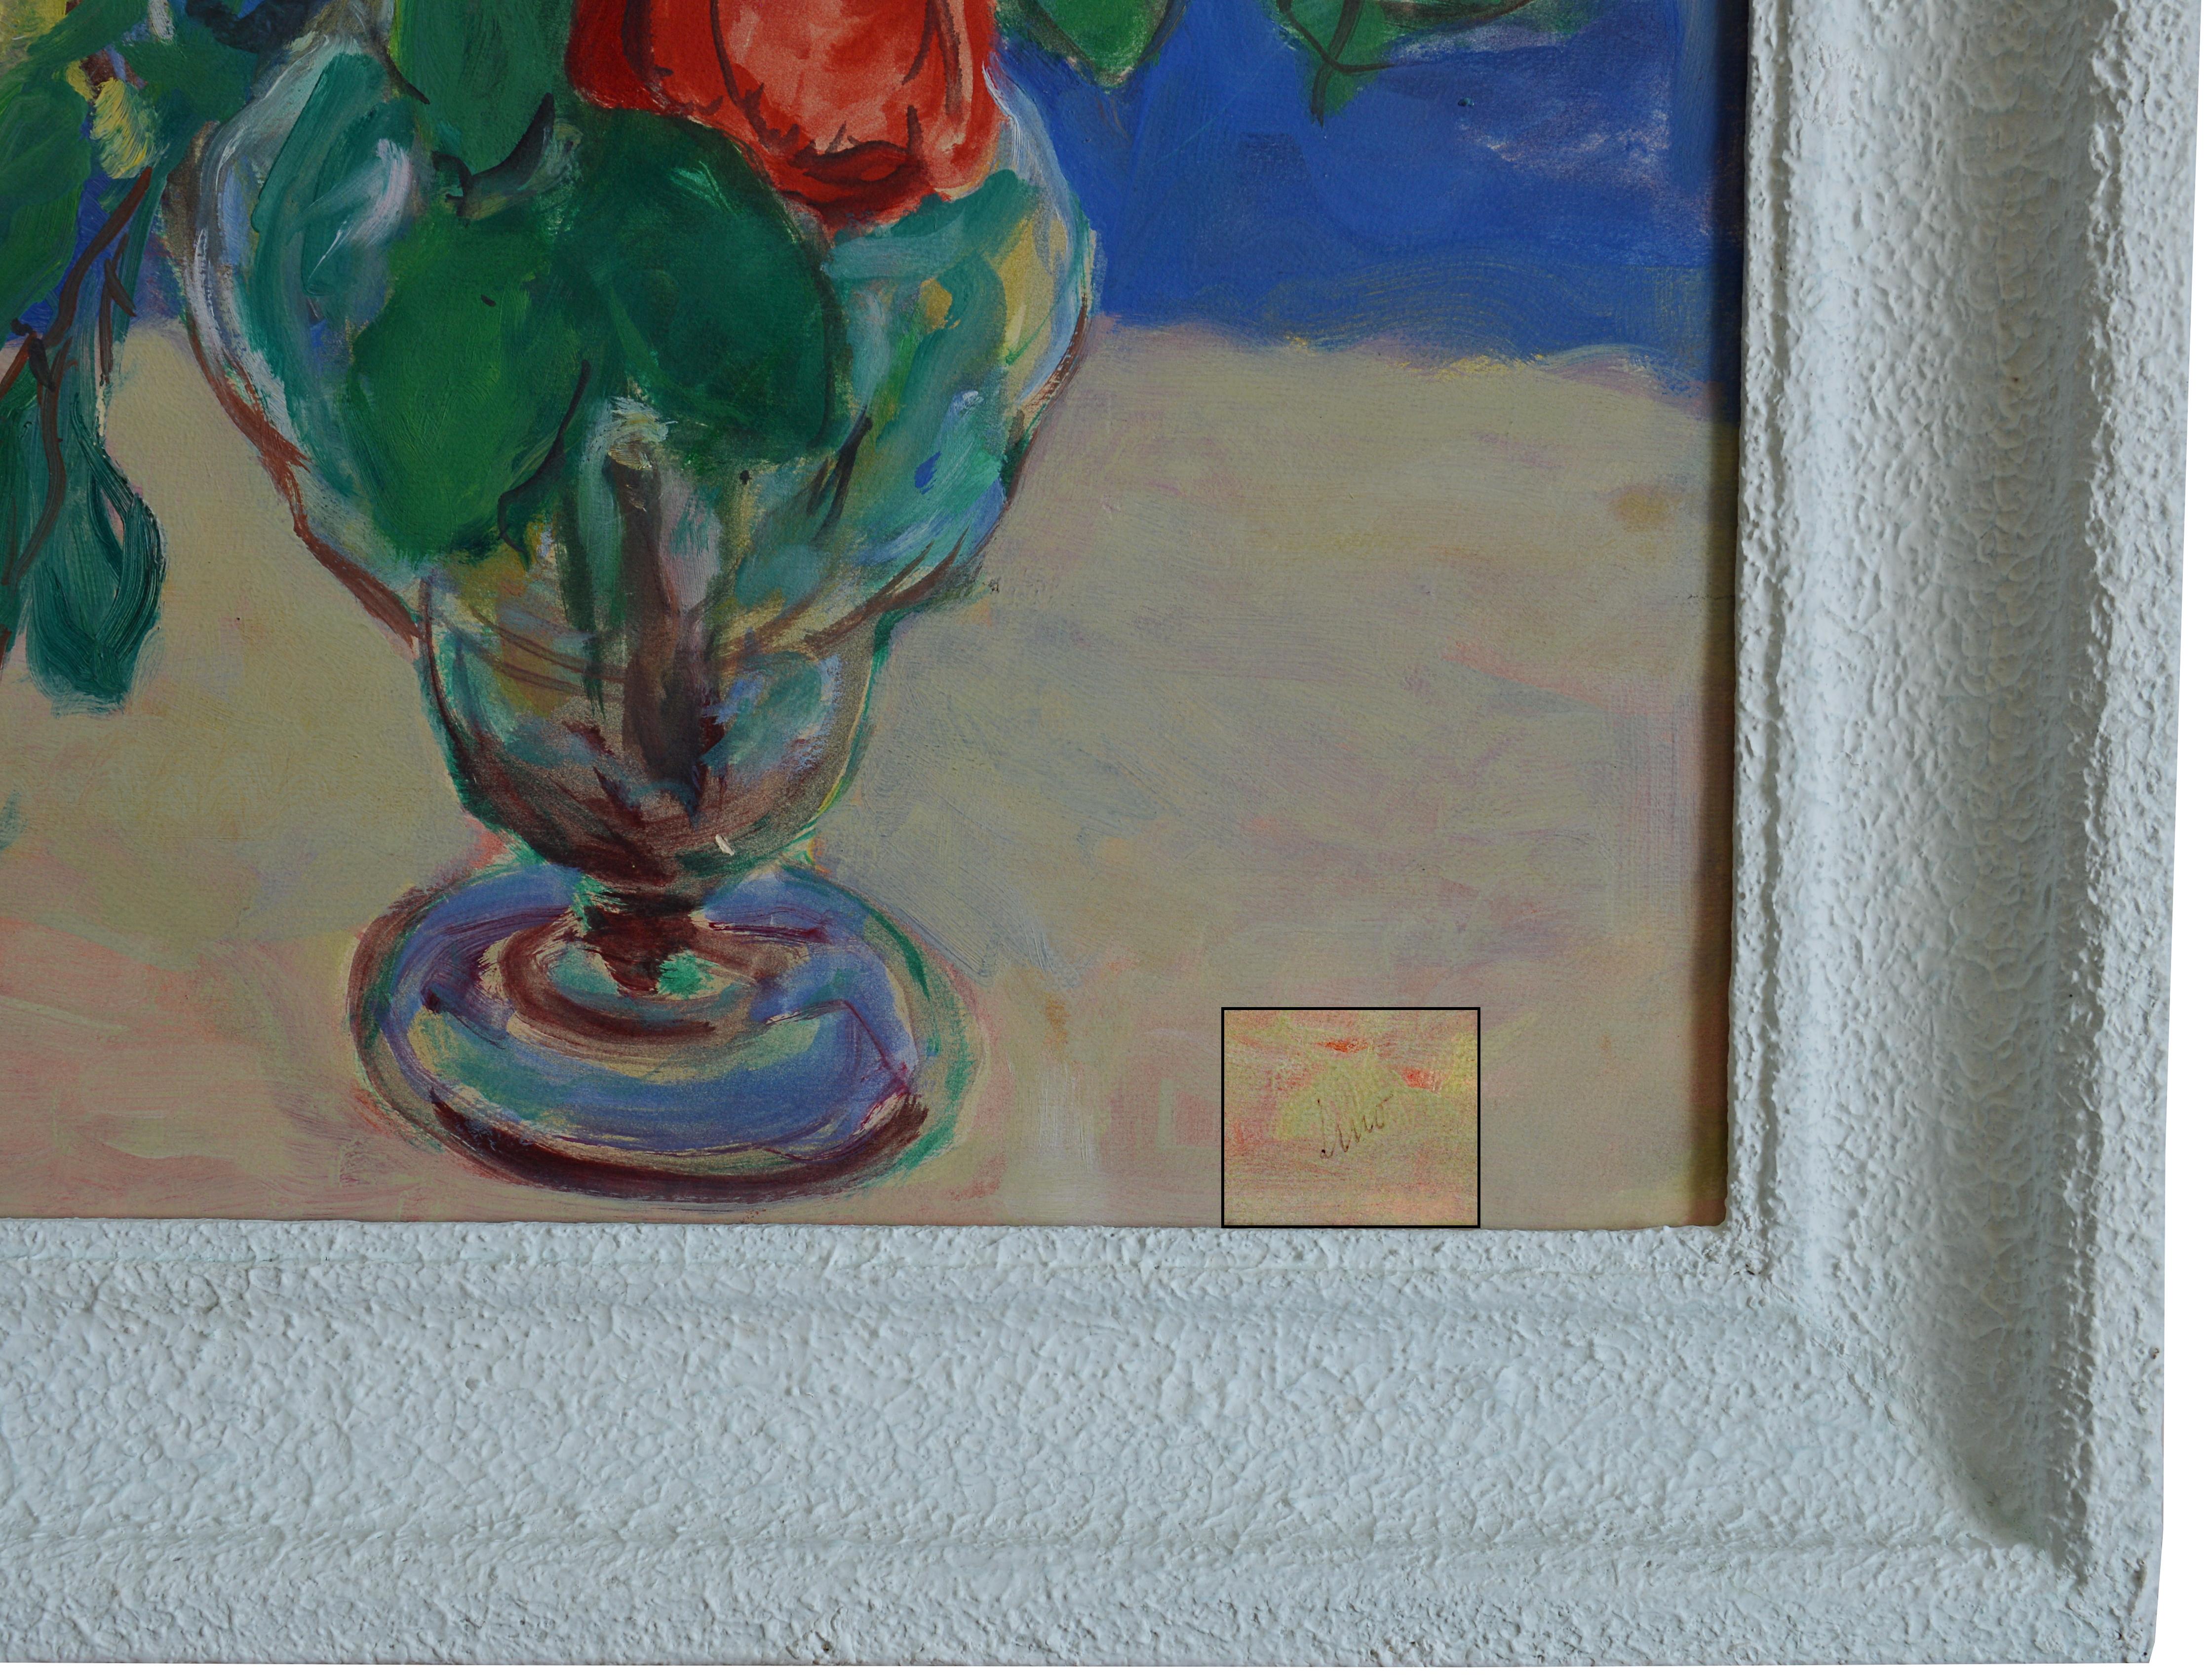 Huile sur papier monté sur carton de Gustave Lino (1893-1961), France, années 1950. Le bouquet de roses. Dimensions : avec cadre : 73.5x58.6 cm - 28.9x23.1  pouces
sans cadre : 61x46 cm - 24x18.1 inches, format 12P. Signé 